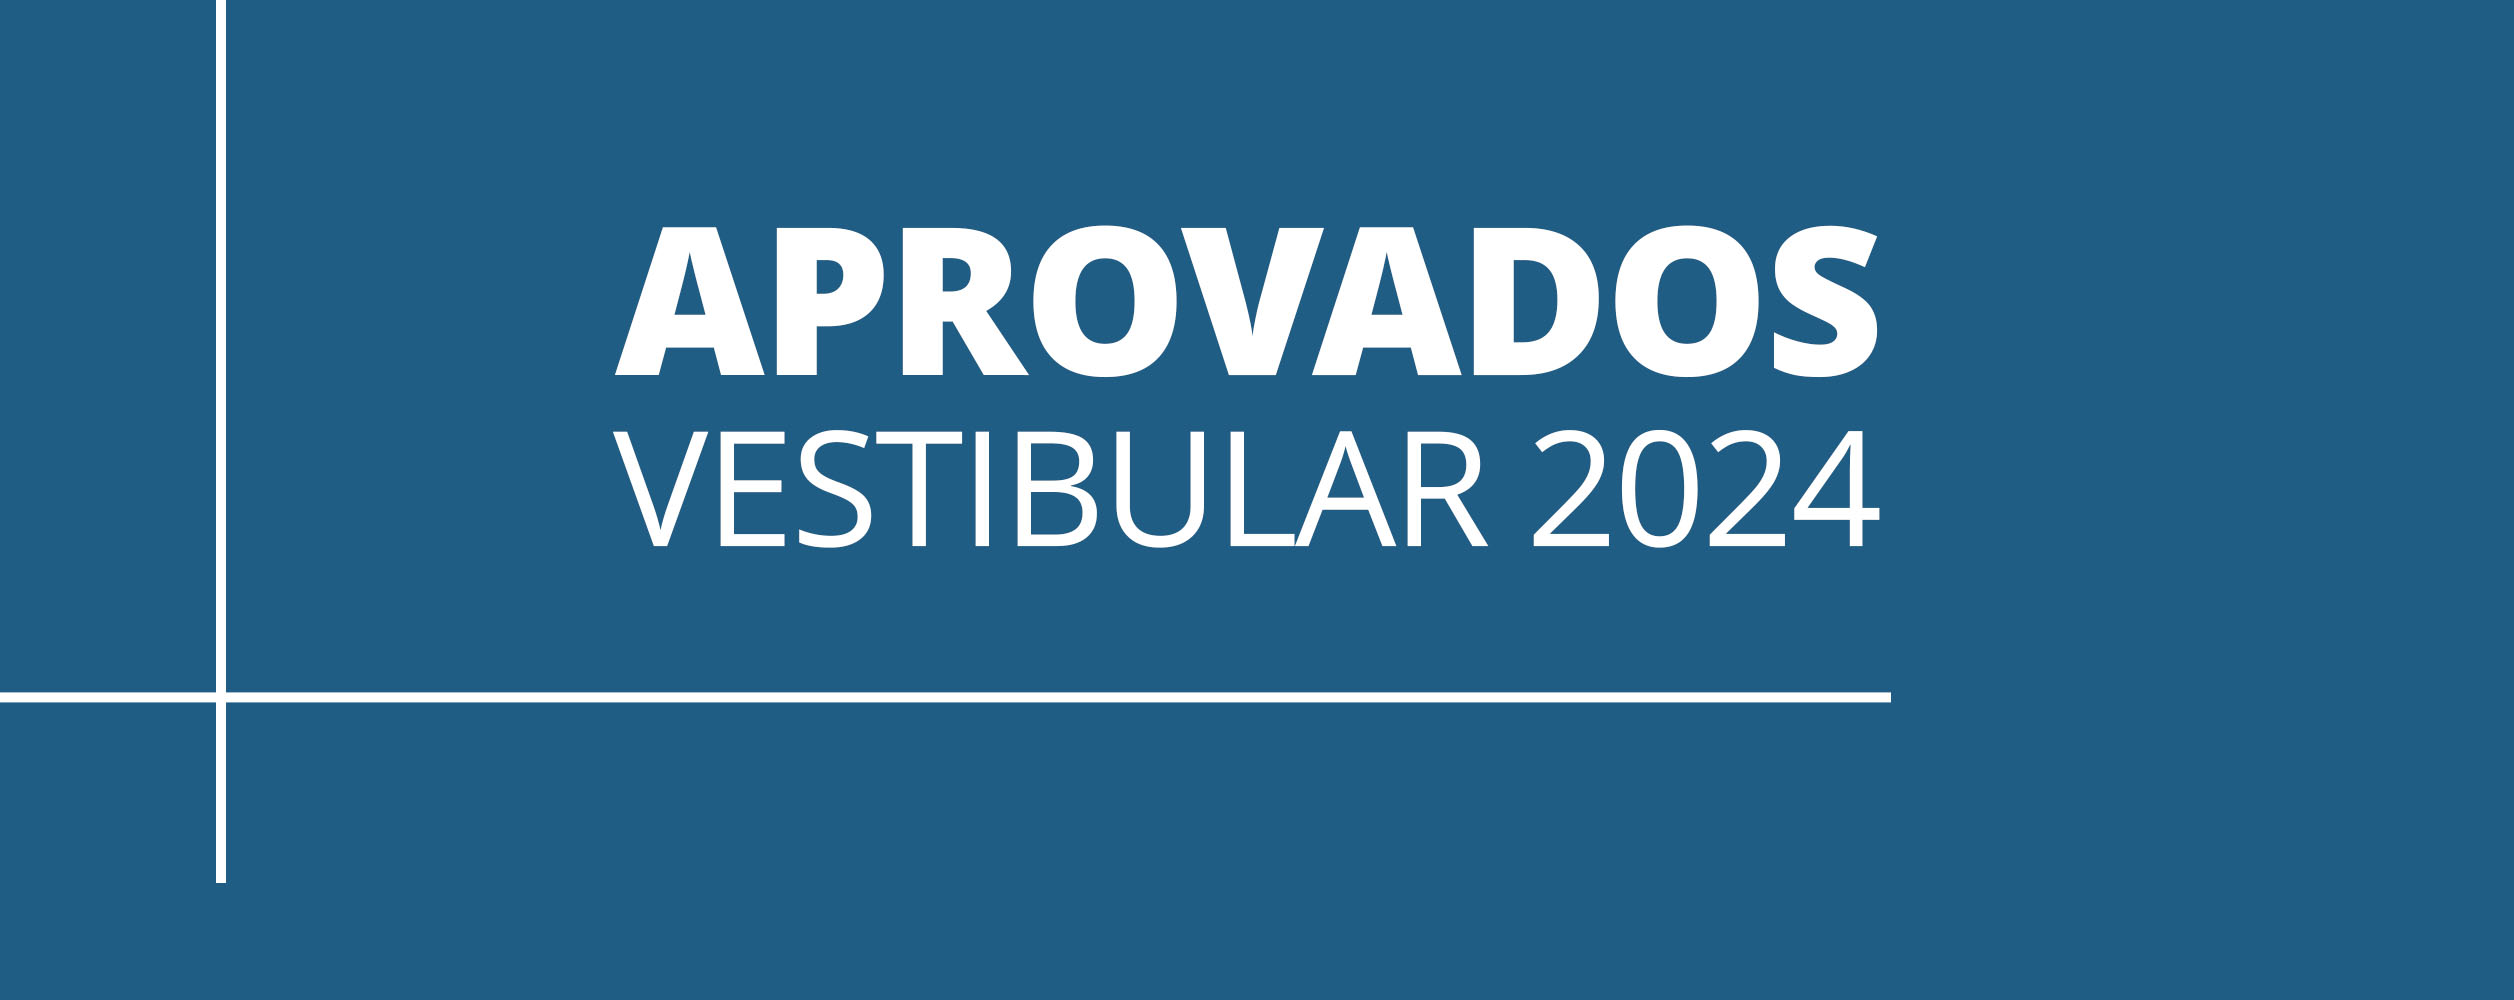 LISTA DOS ALUNOS APROVADOS - VESTIBULAR 2024